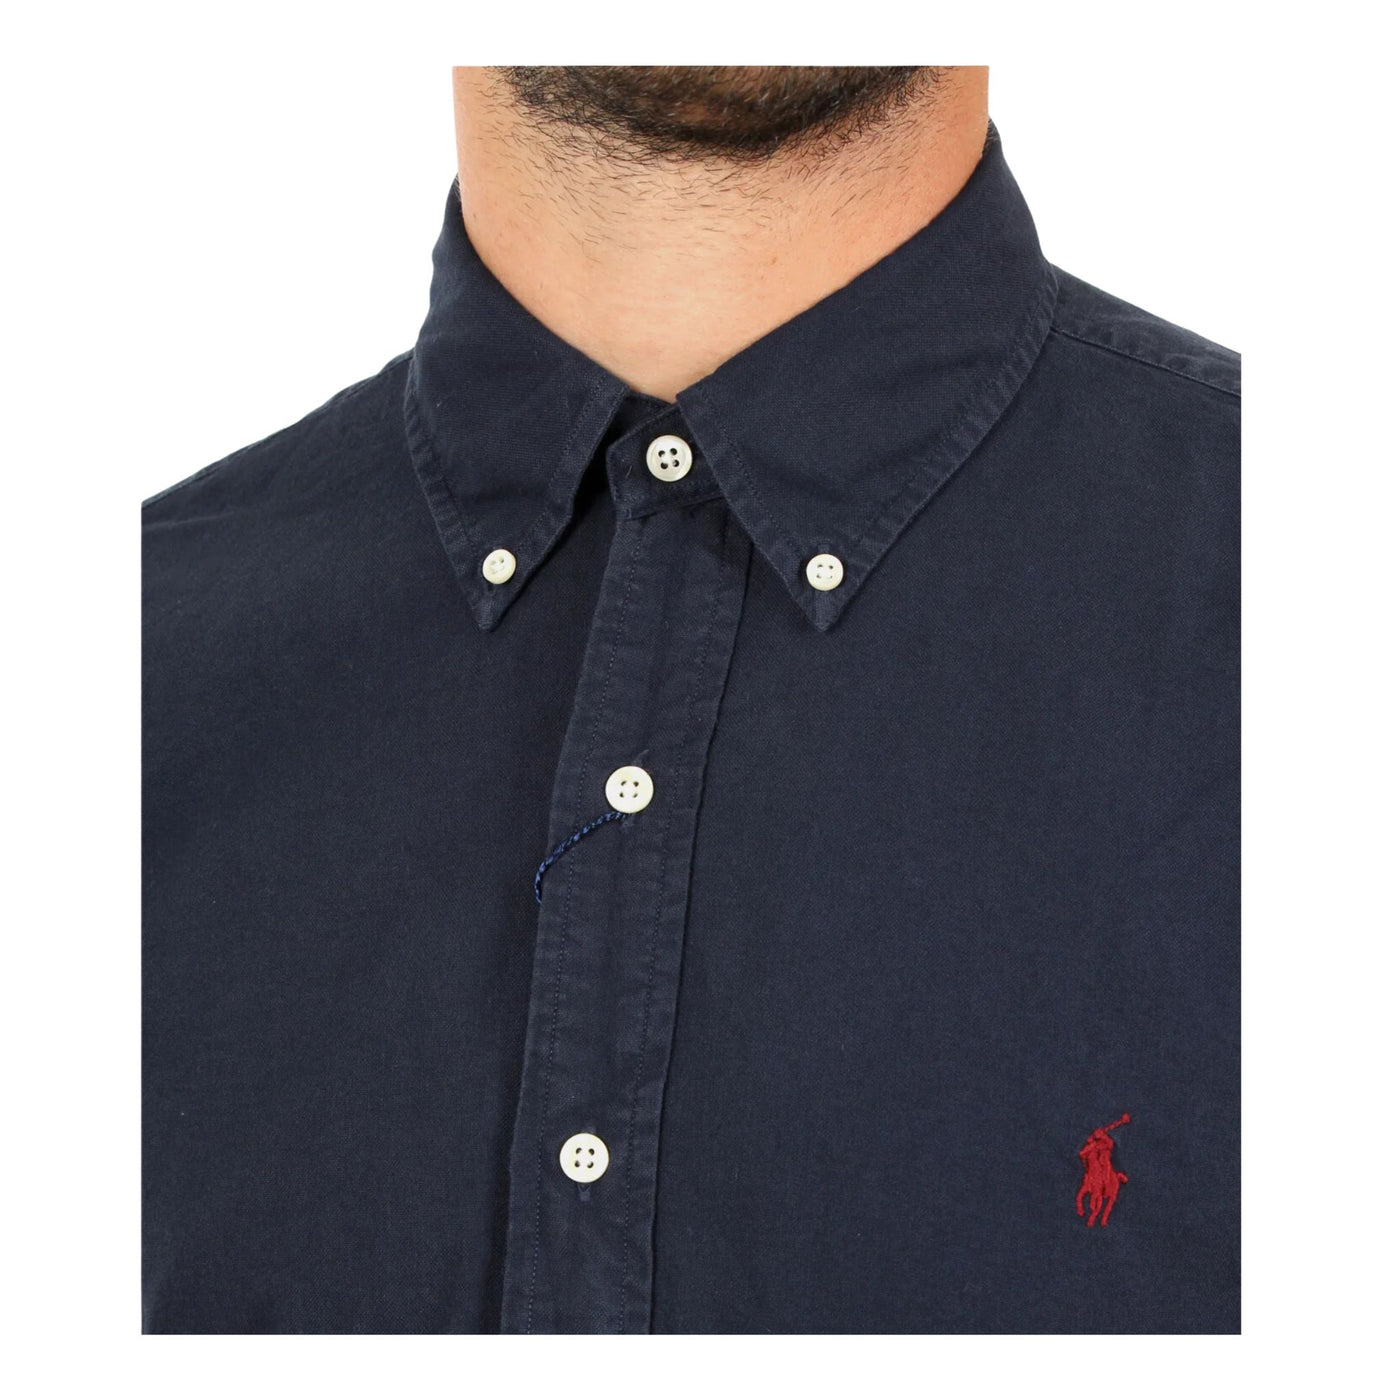 Dettaglio camicia da uomo blu ,con logo ricamato Polo Ralph Lauren,con chiusura bottoni e colletto classico.